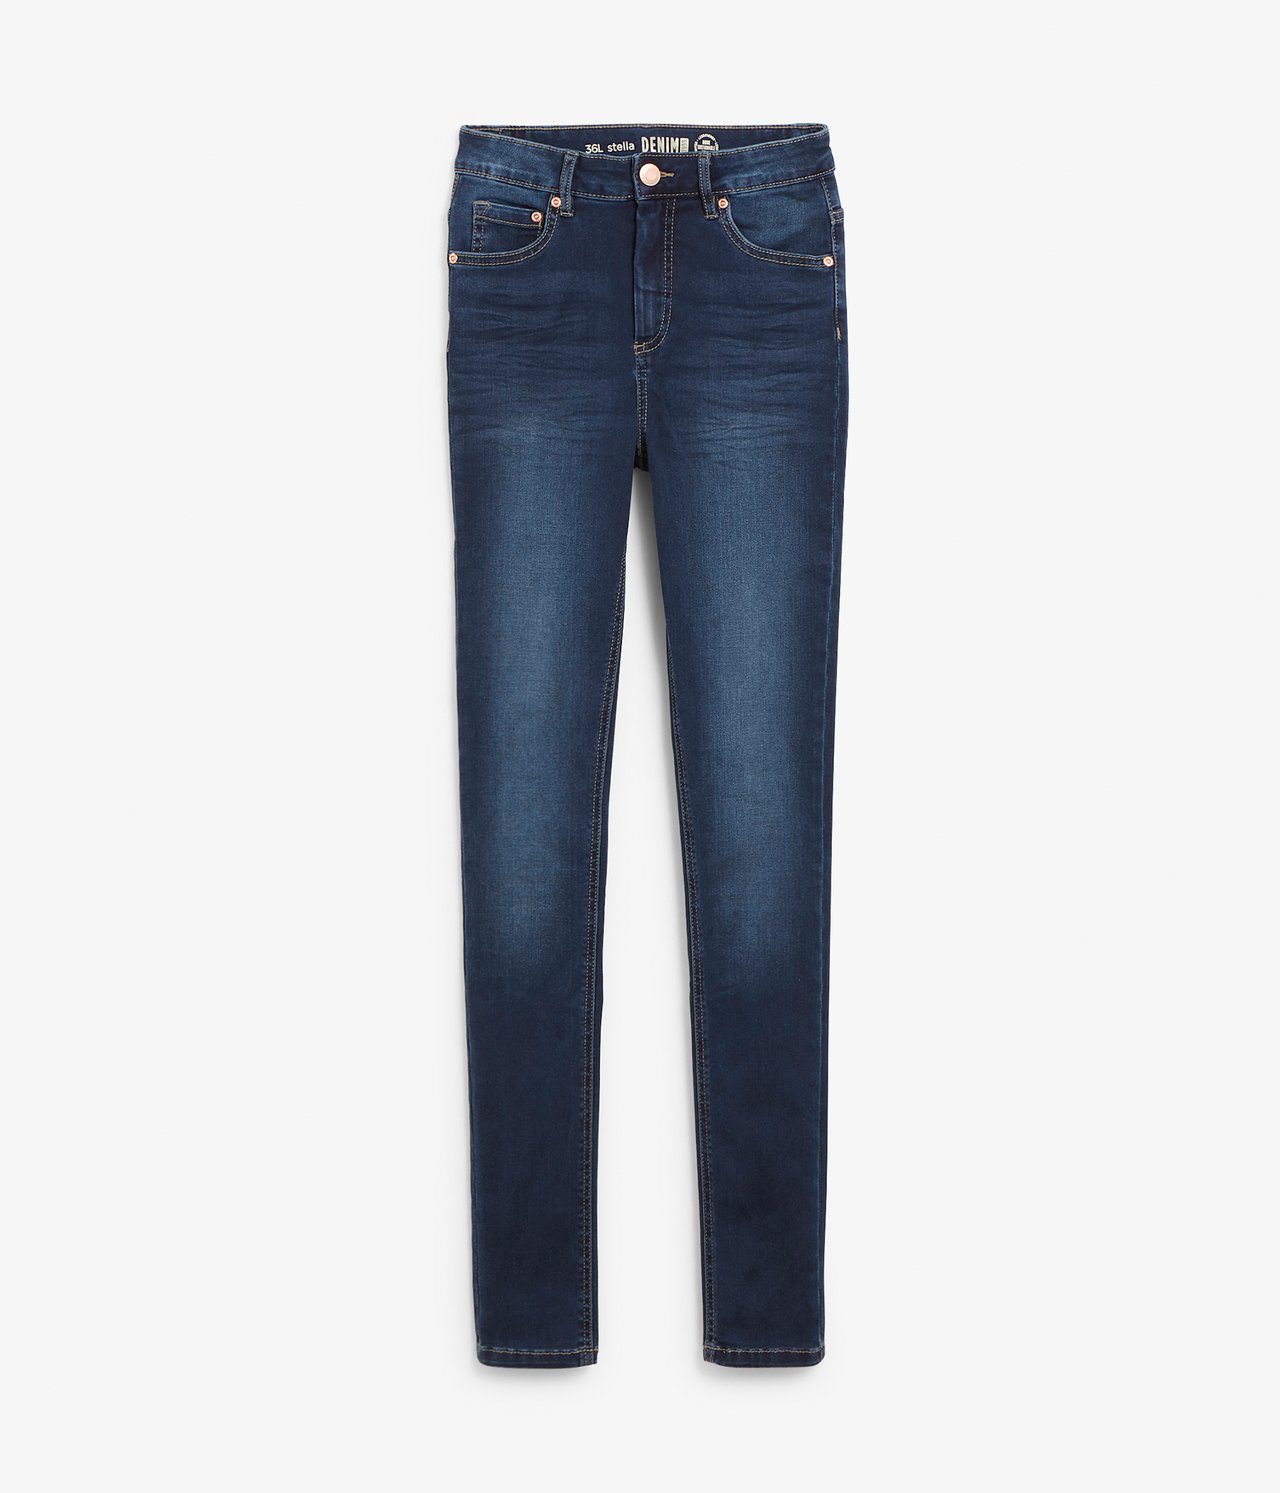 Super slim jeans extra long leg Mørk denim - null - 5